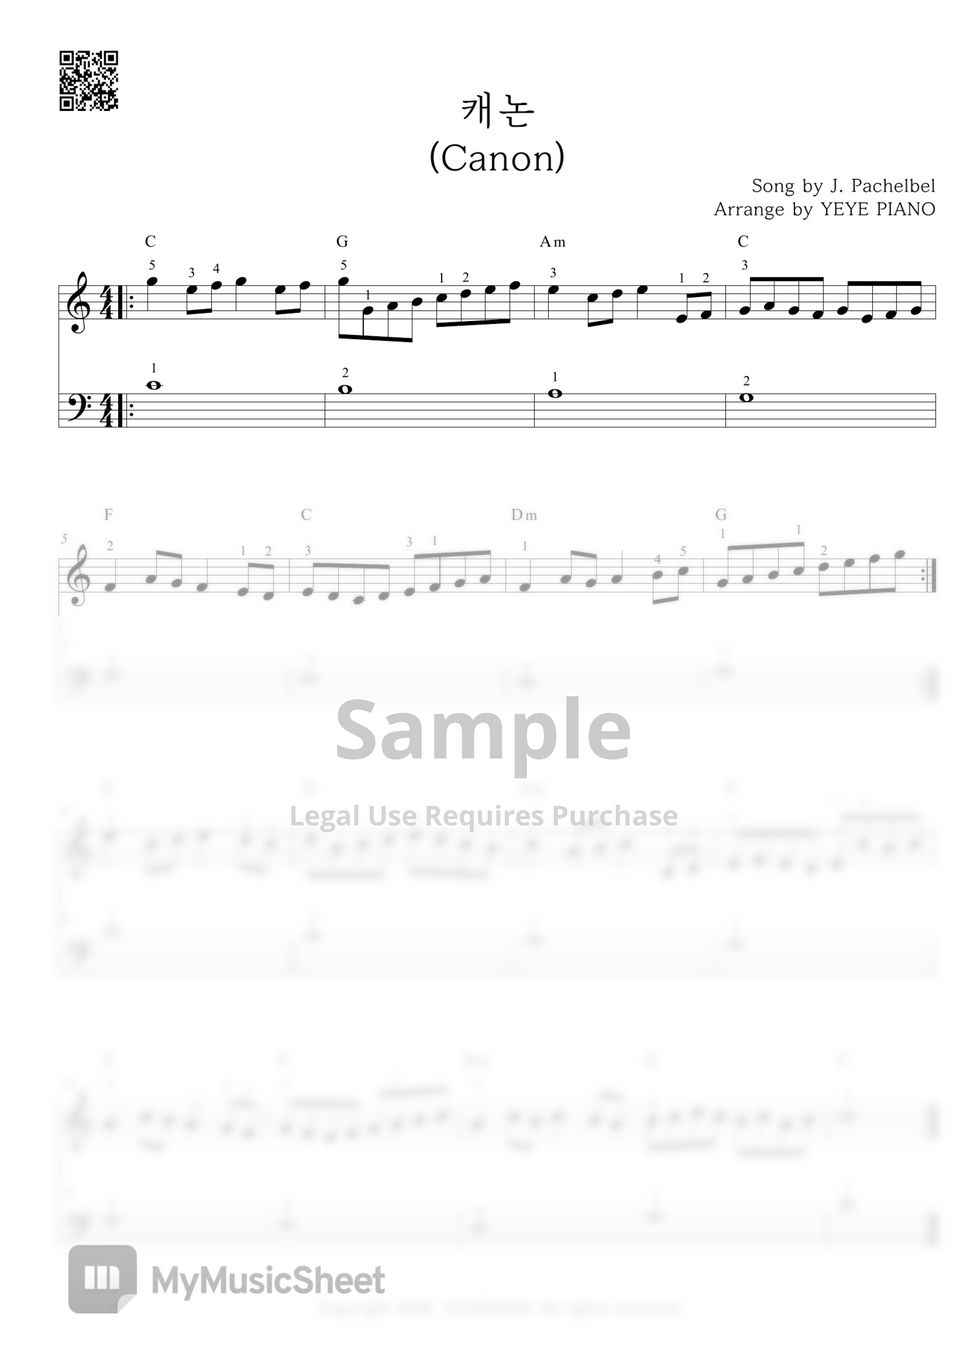 J. Pachelbel - Canon by 예예피아노(YEYE PIANO)